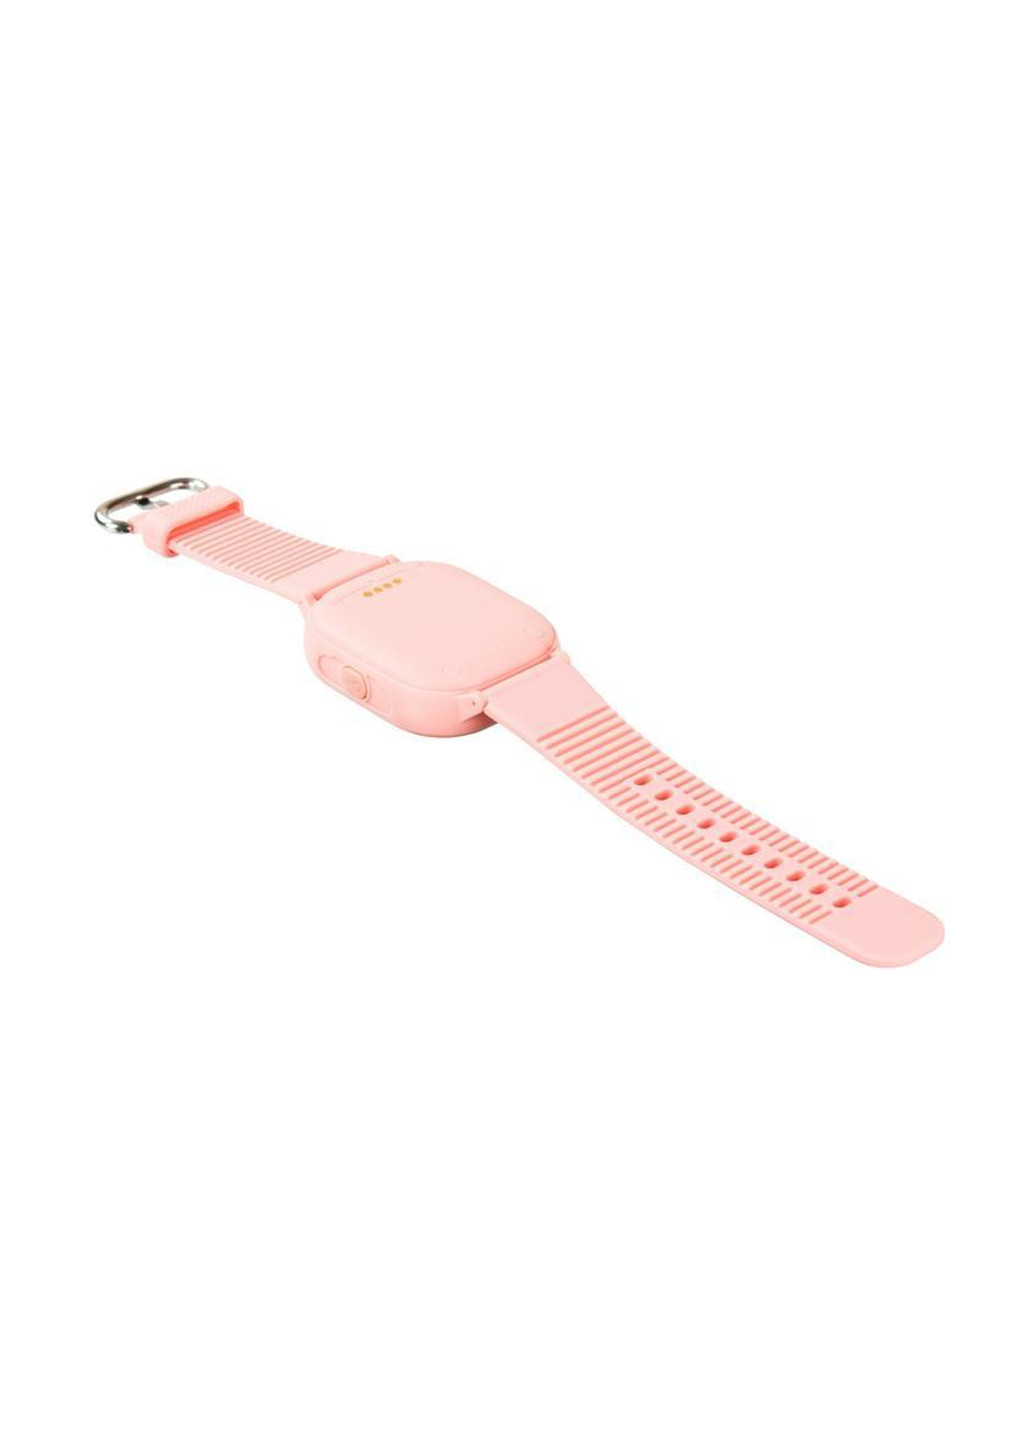 Детские телефон-часы с GPS трекером Розовые Motto td05 (132867196)